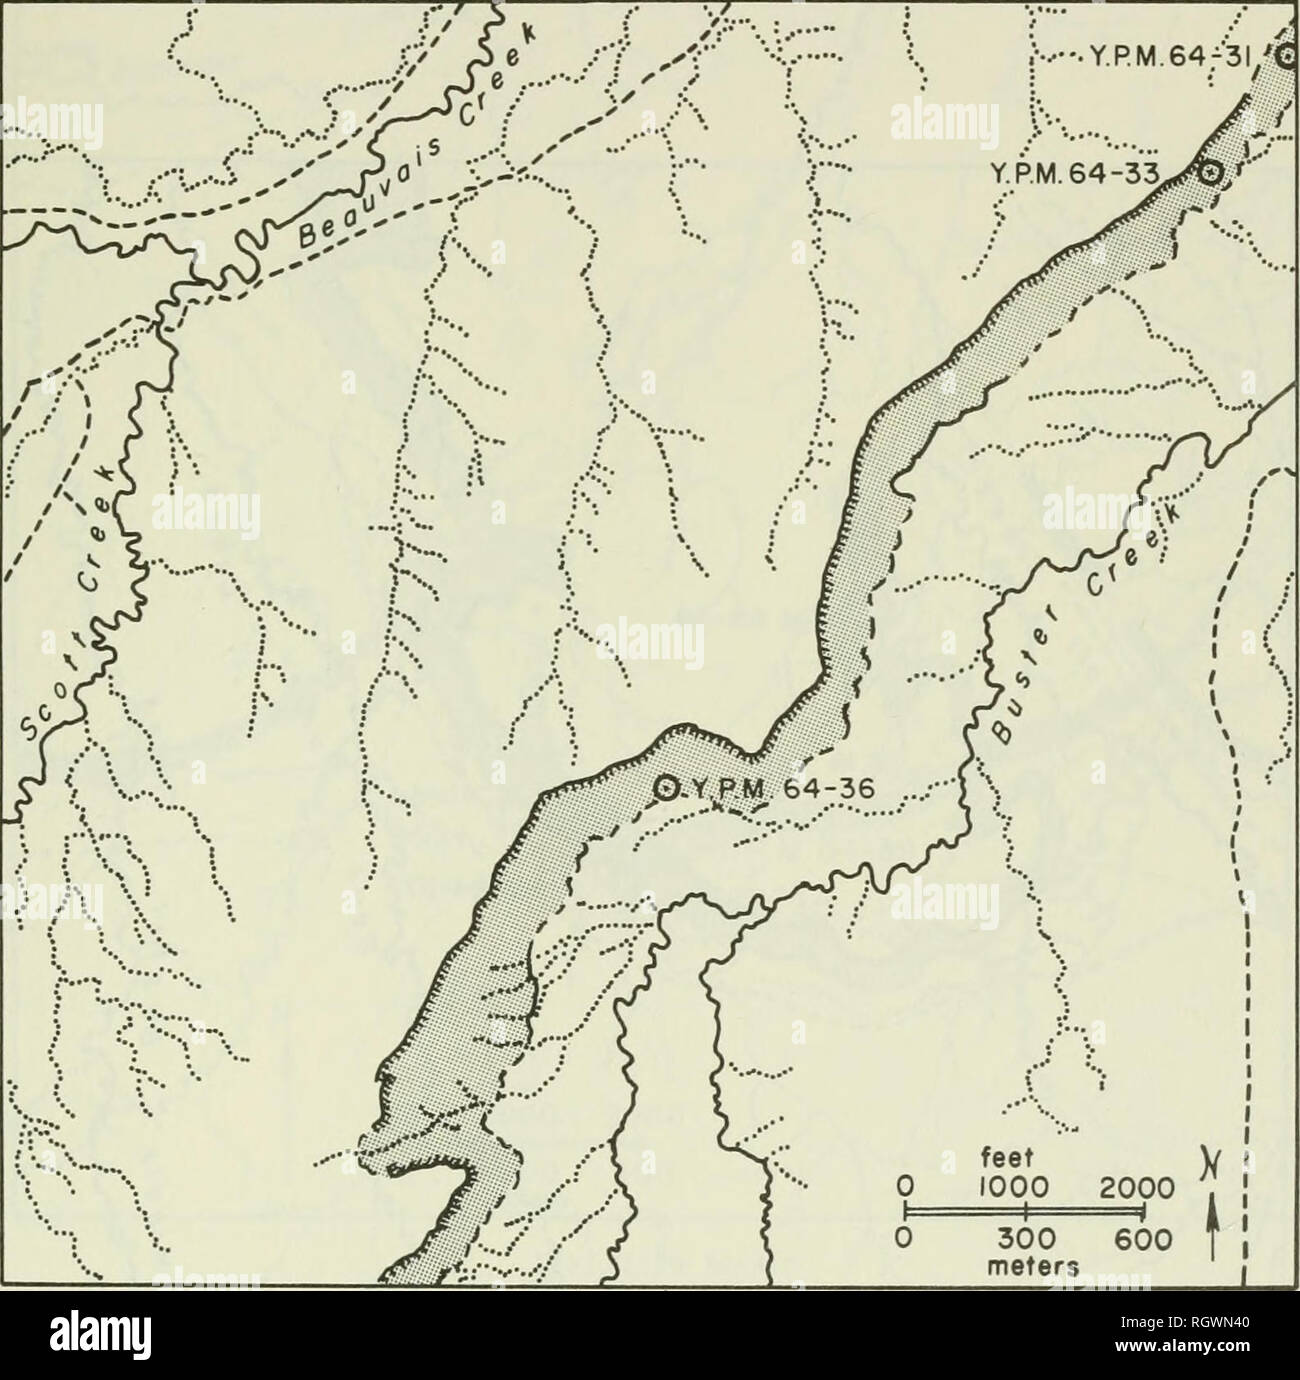 Bulletin. L'histoire naturelle. YPM 221 64-27 SE 1/4 Sec. 35, T.4 S. , R.29  E. , 300 yards (275 m) se d'YPM 64-26, Big Horn County, Montana. Voir la  carte de